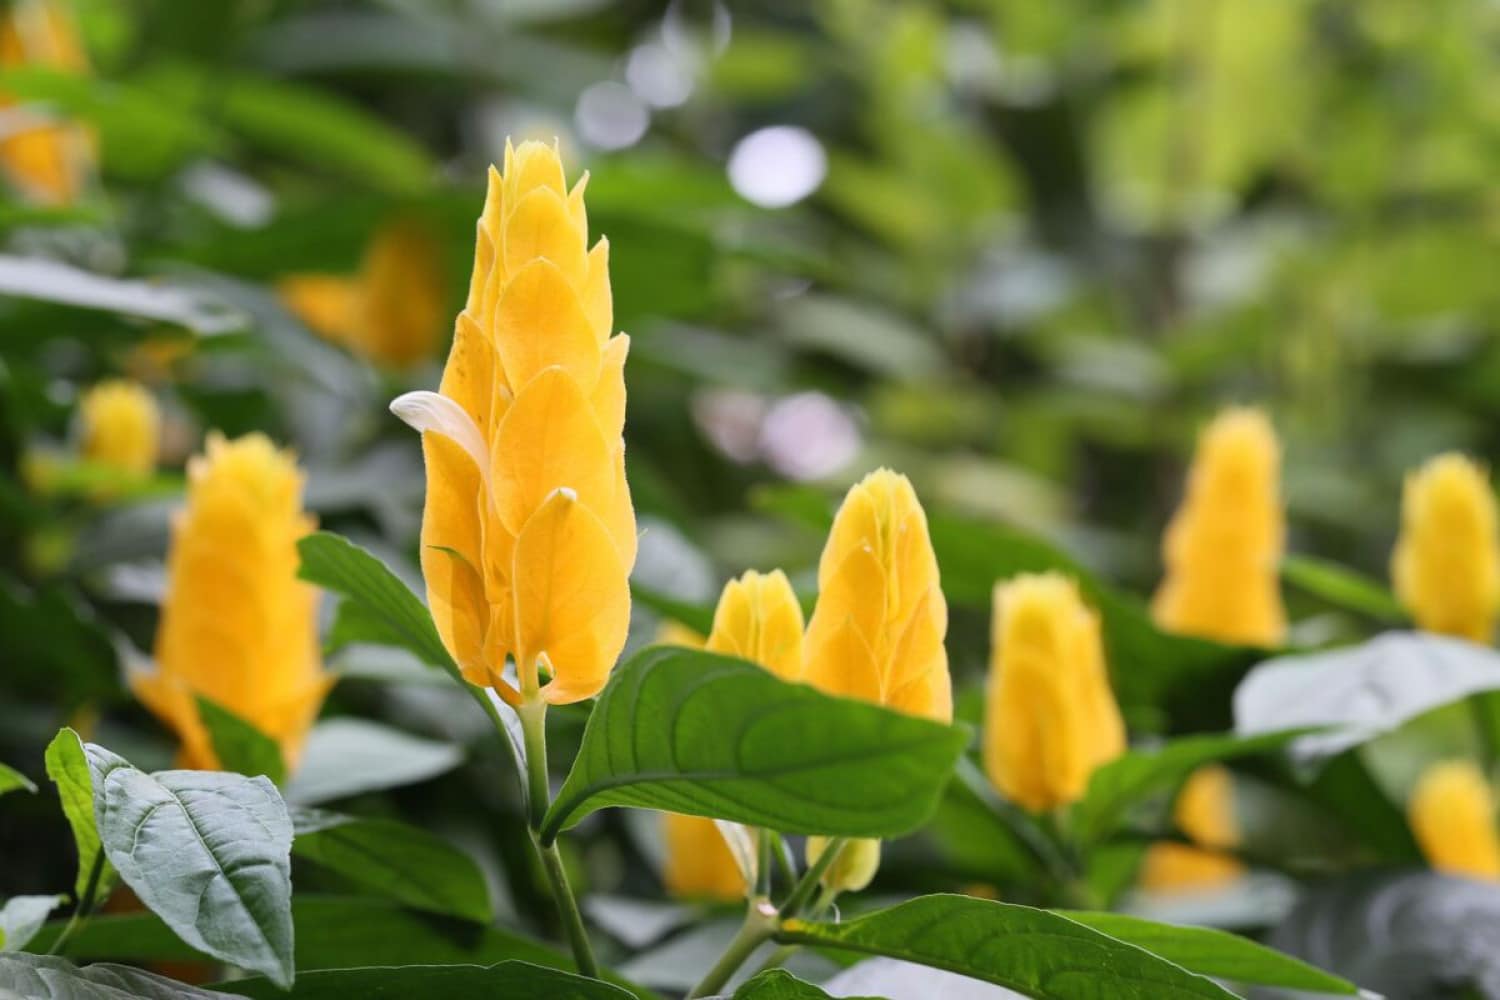  زیبایی کنجکاو: برای باغی زیباتر، میگوی زرد بکارید